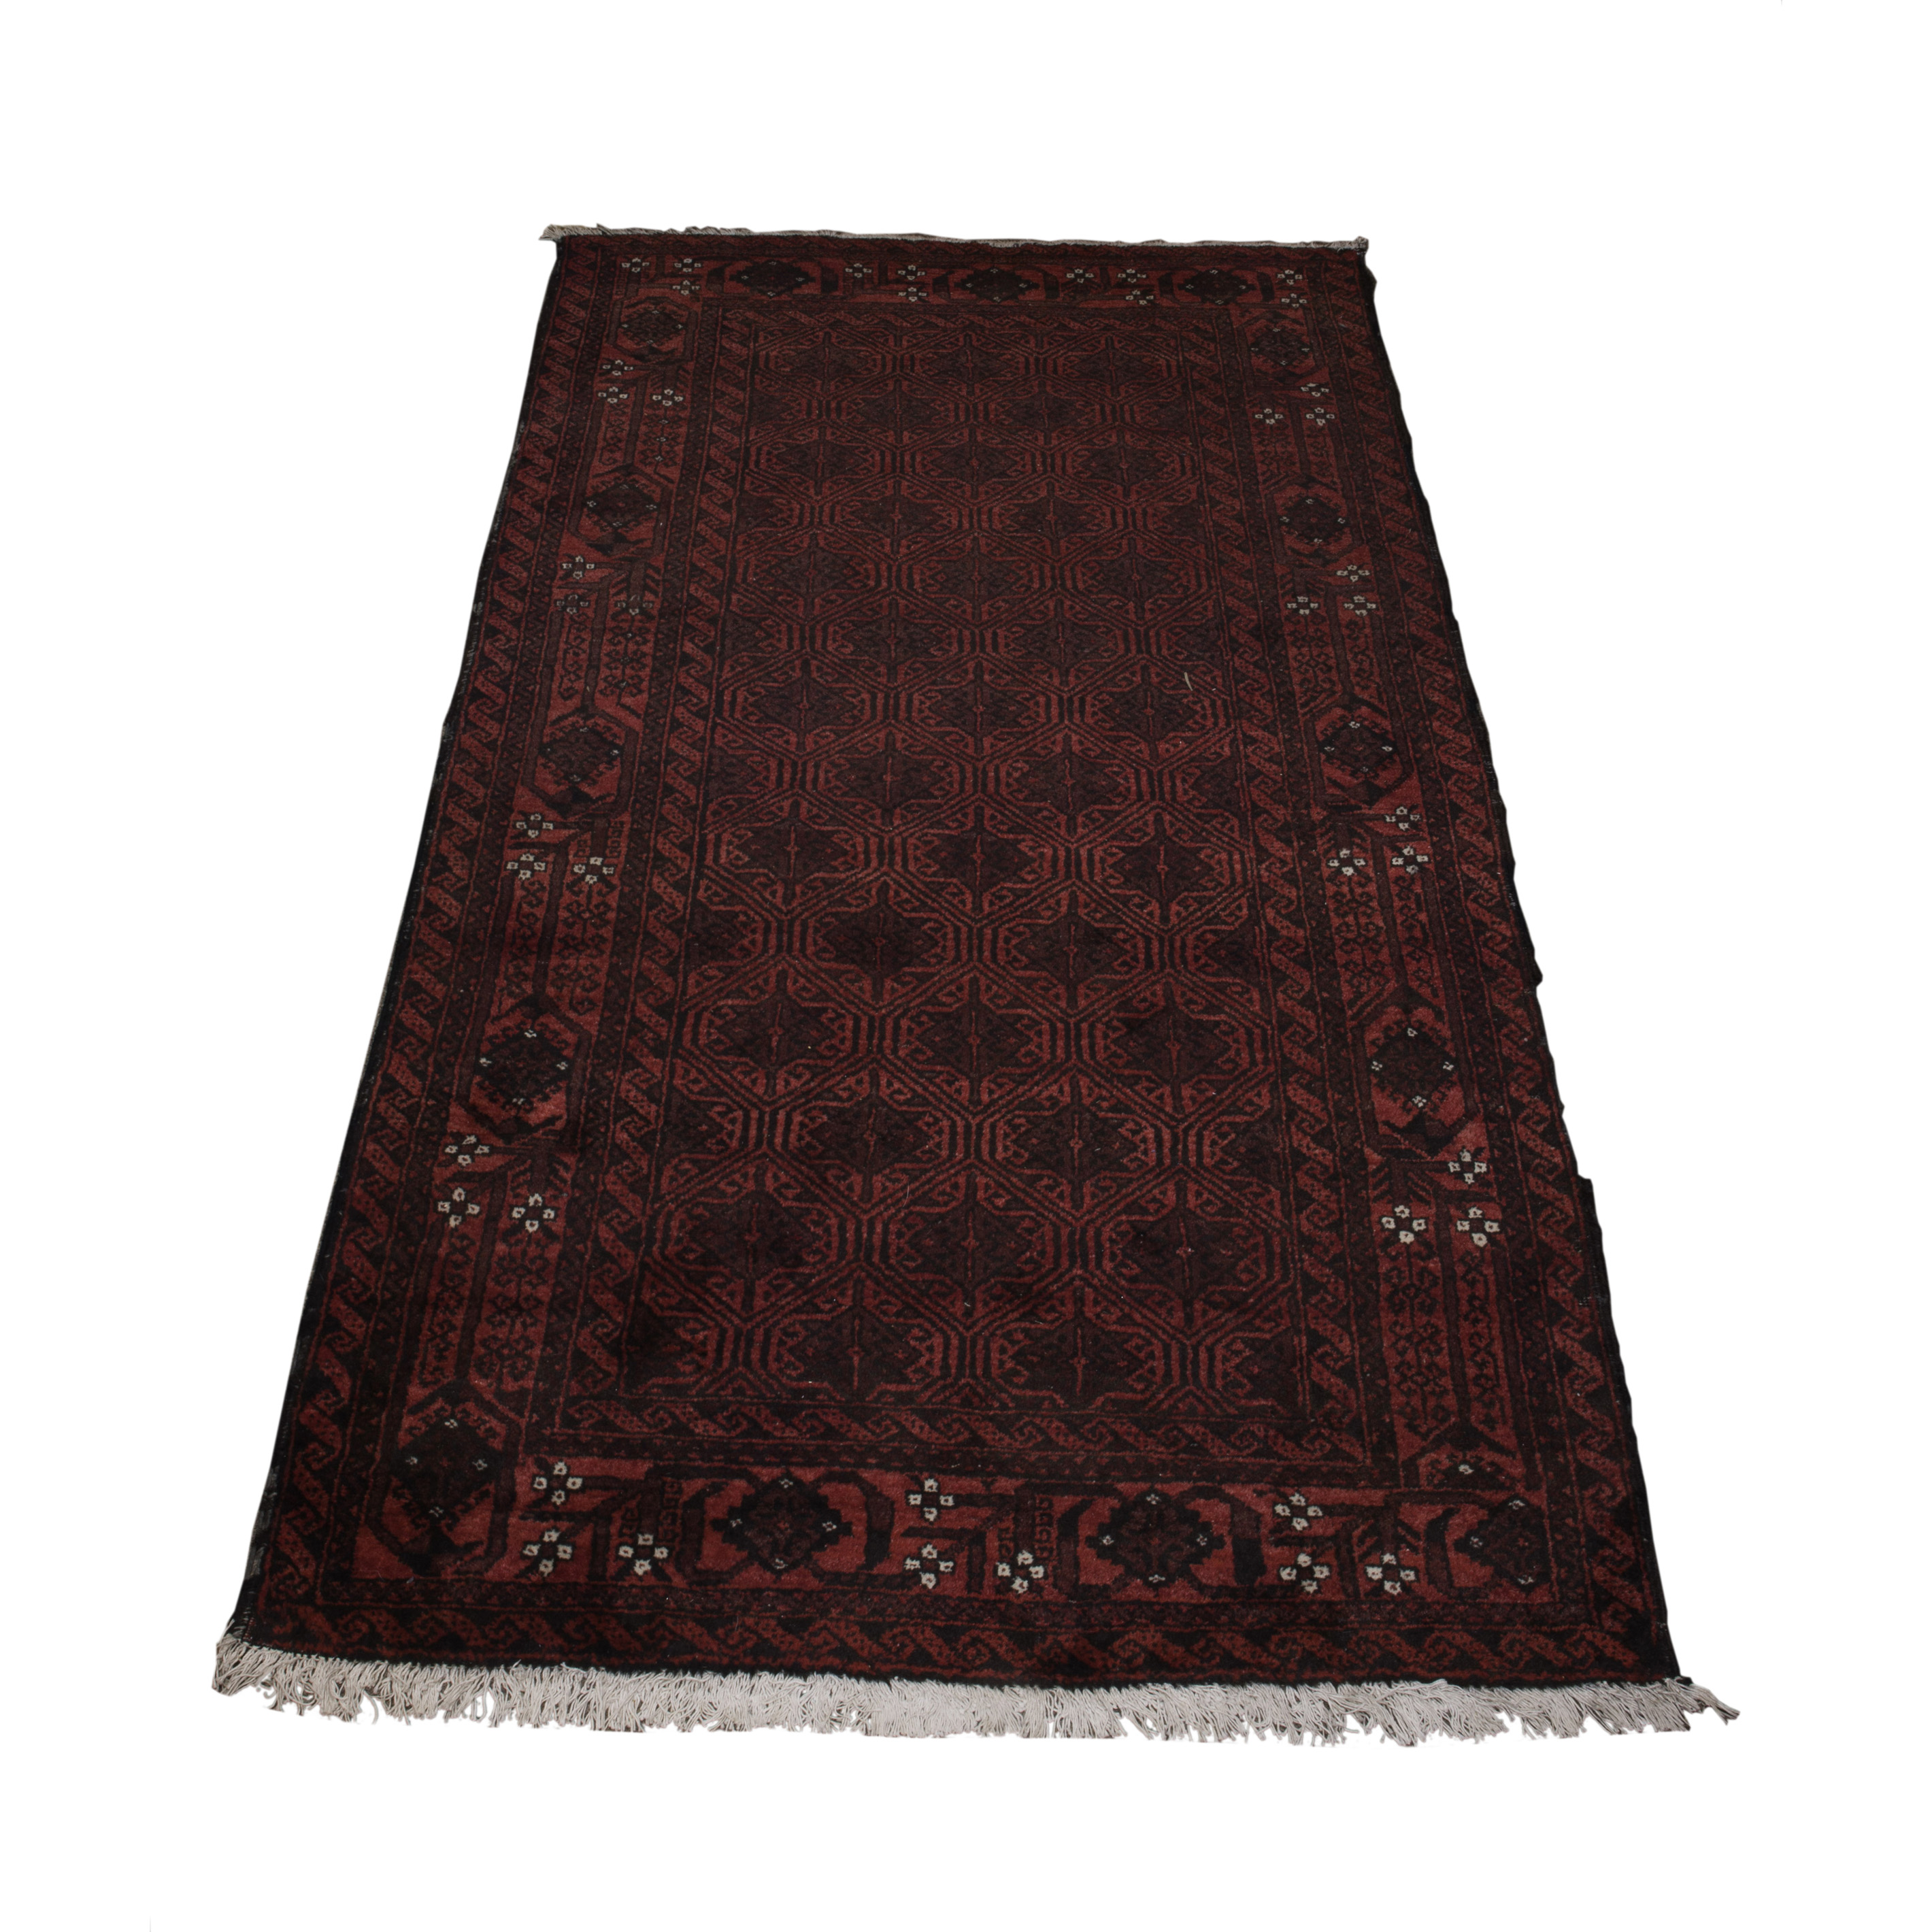 PAKISTANI CARPET Pakistani carpet  3a42b0